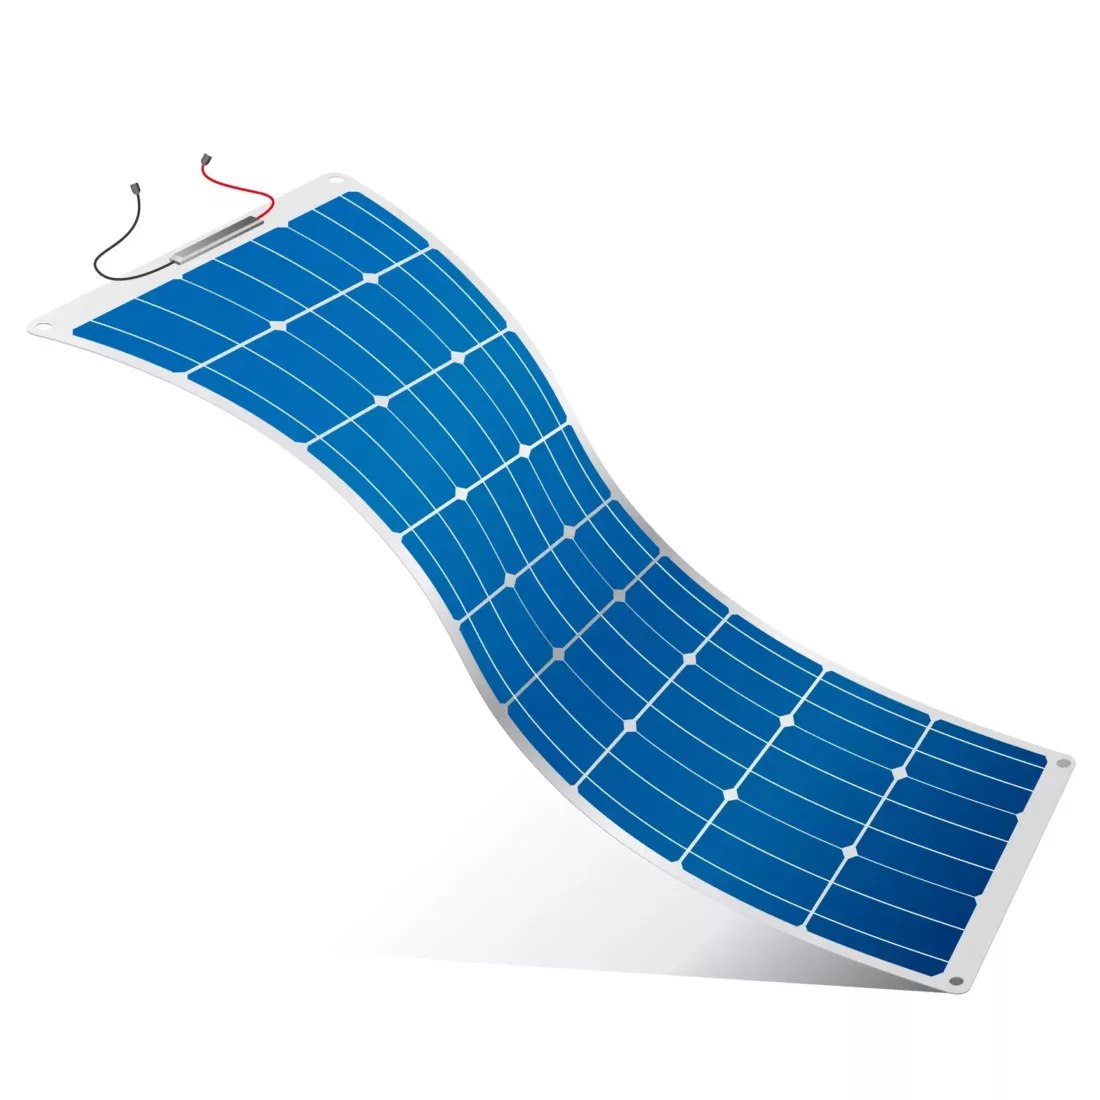 Flexible Solar Panel Vector